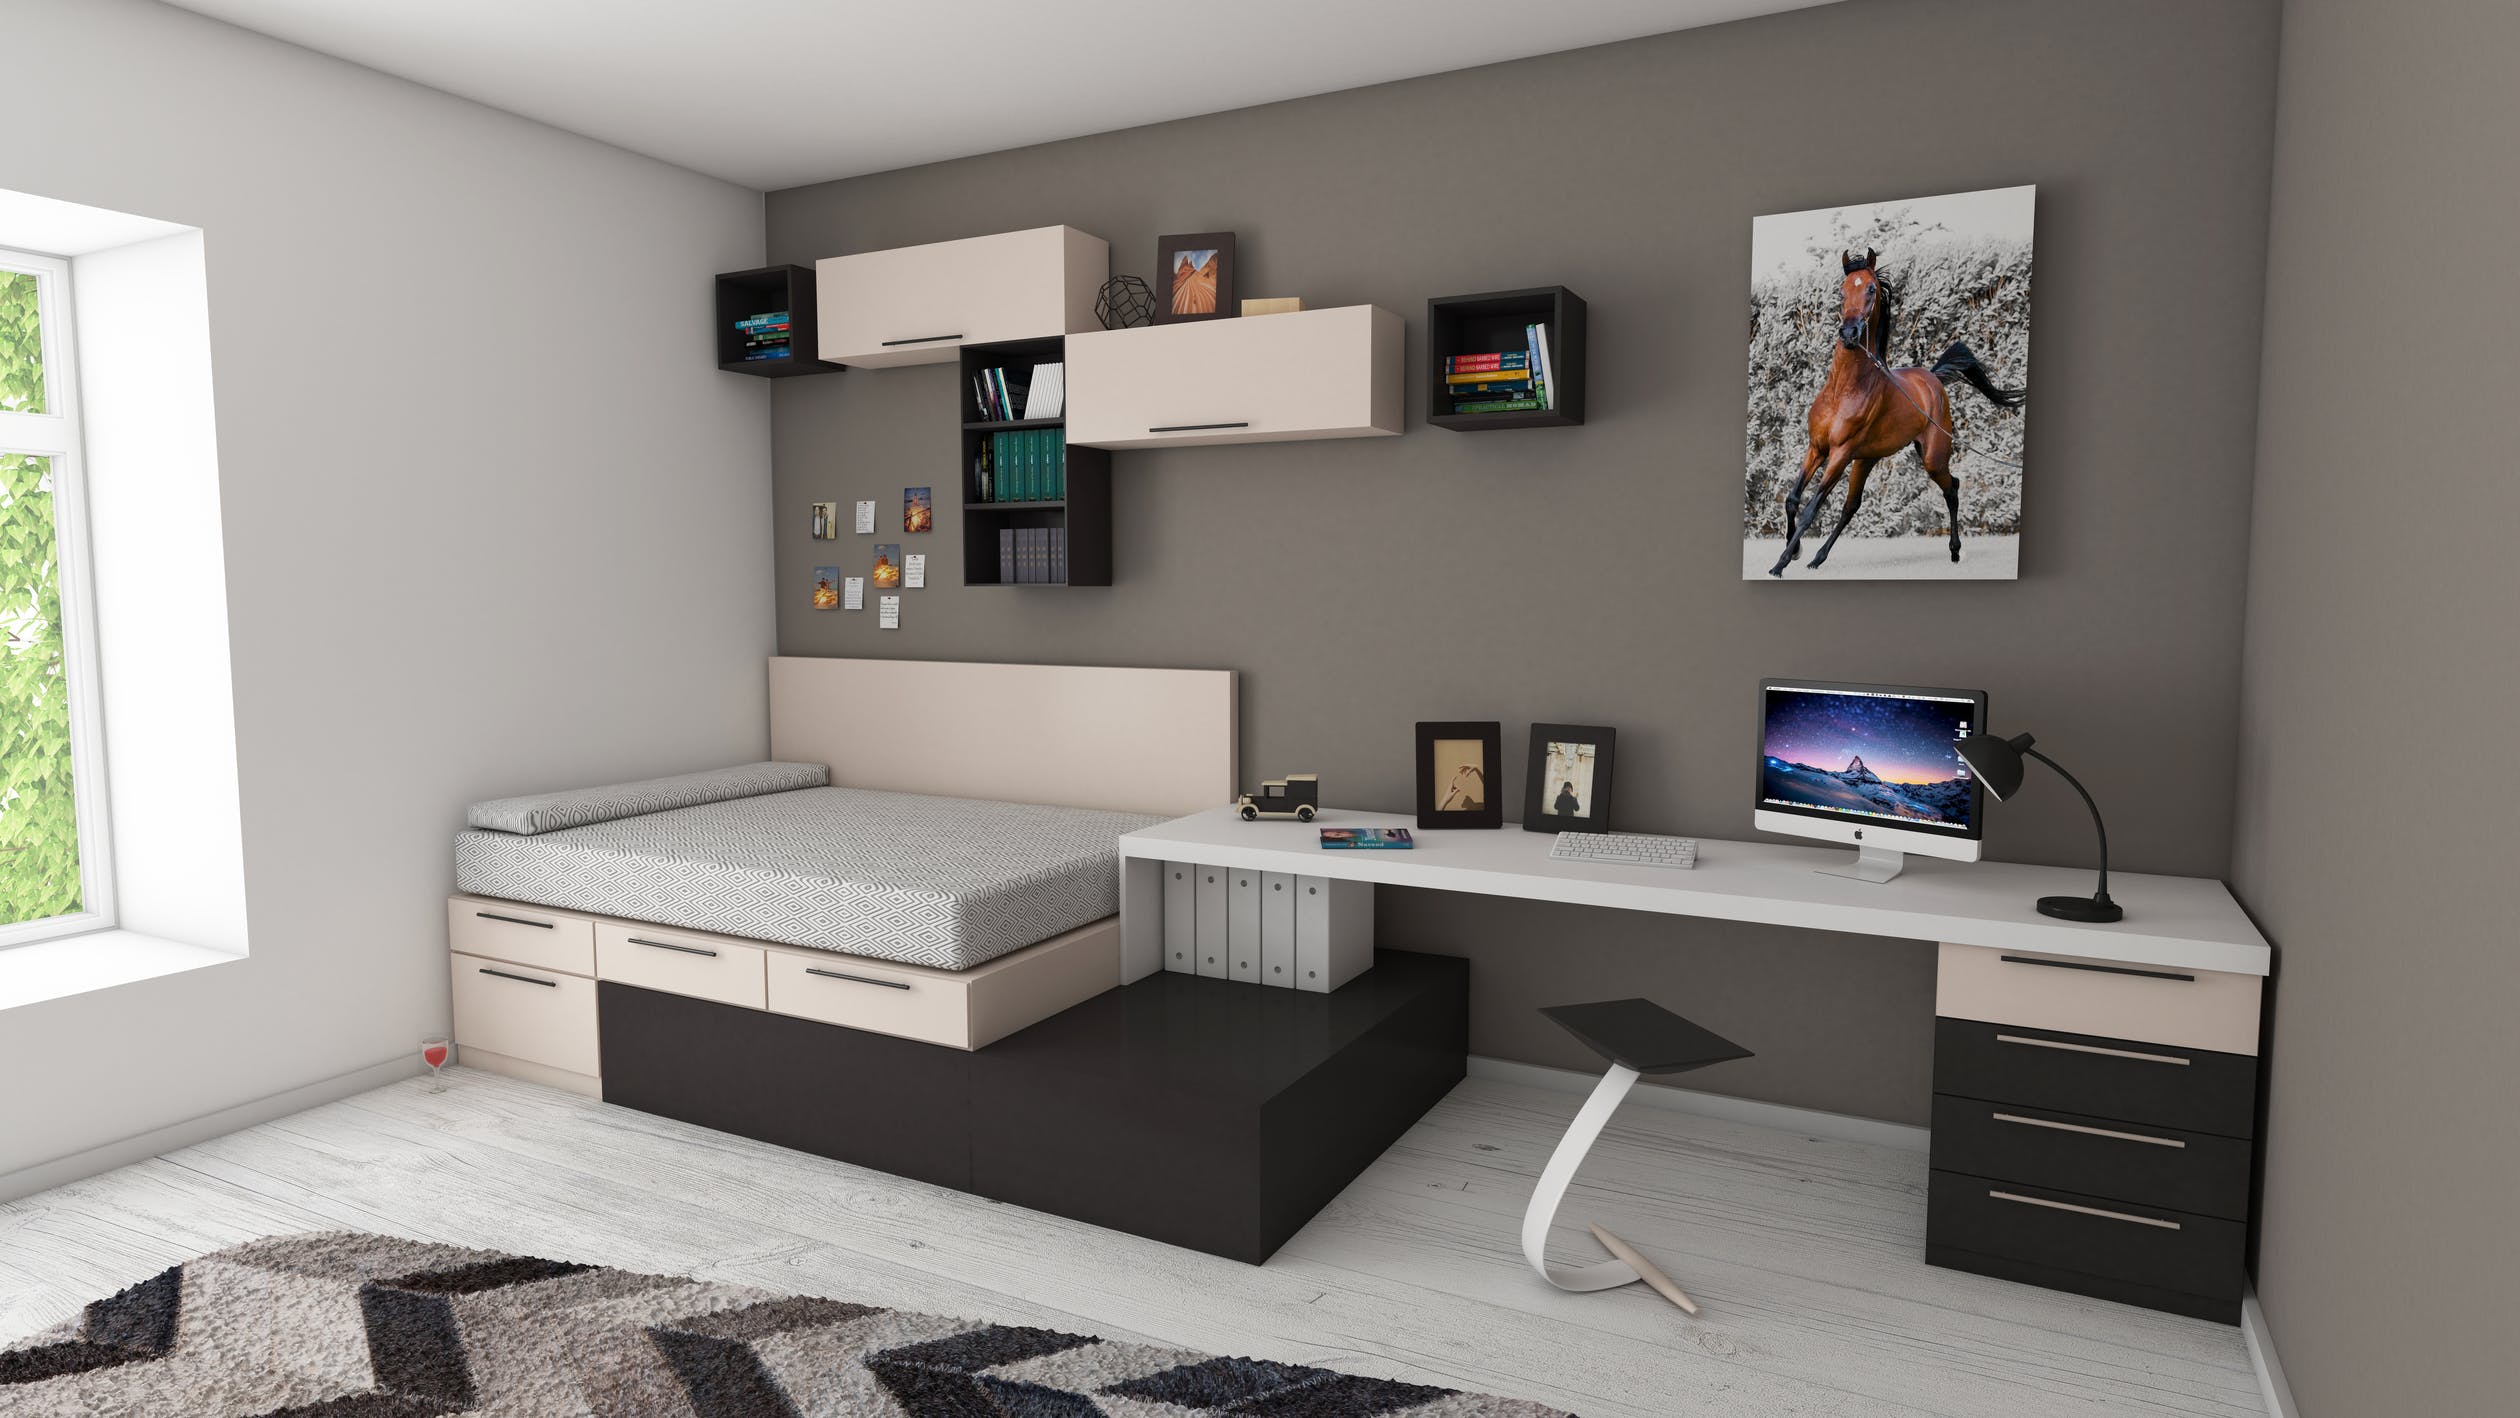 Comment organiser un coin bureau pratique et esthétique dans sa chambre ? -  Blog déco Conforama